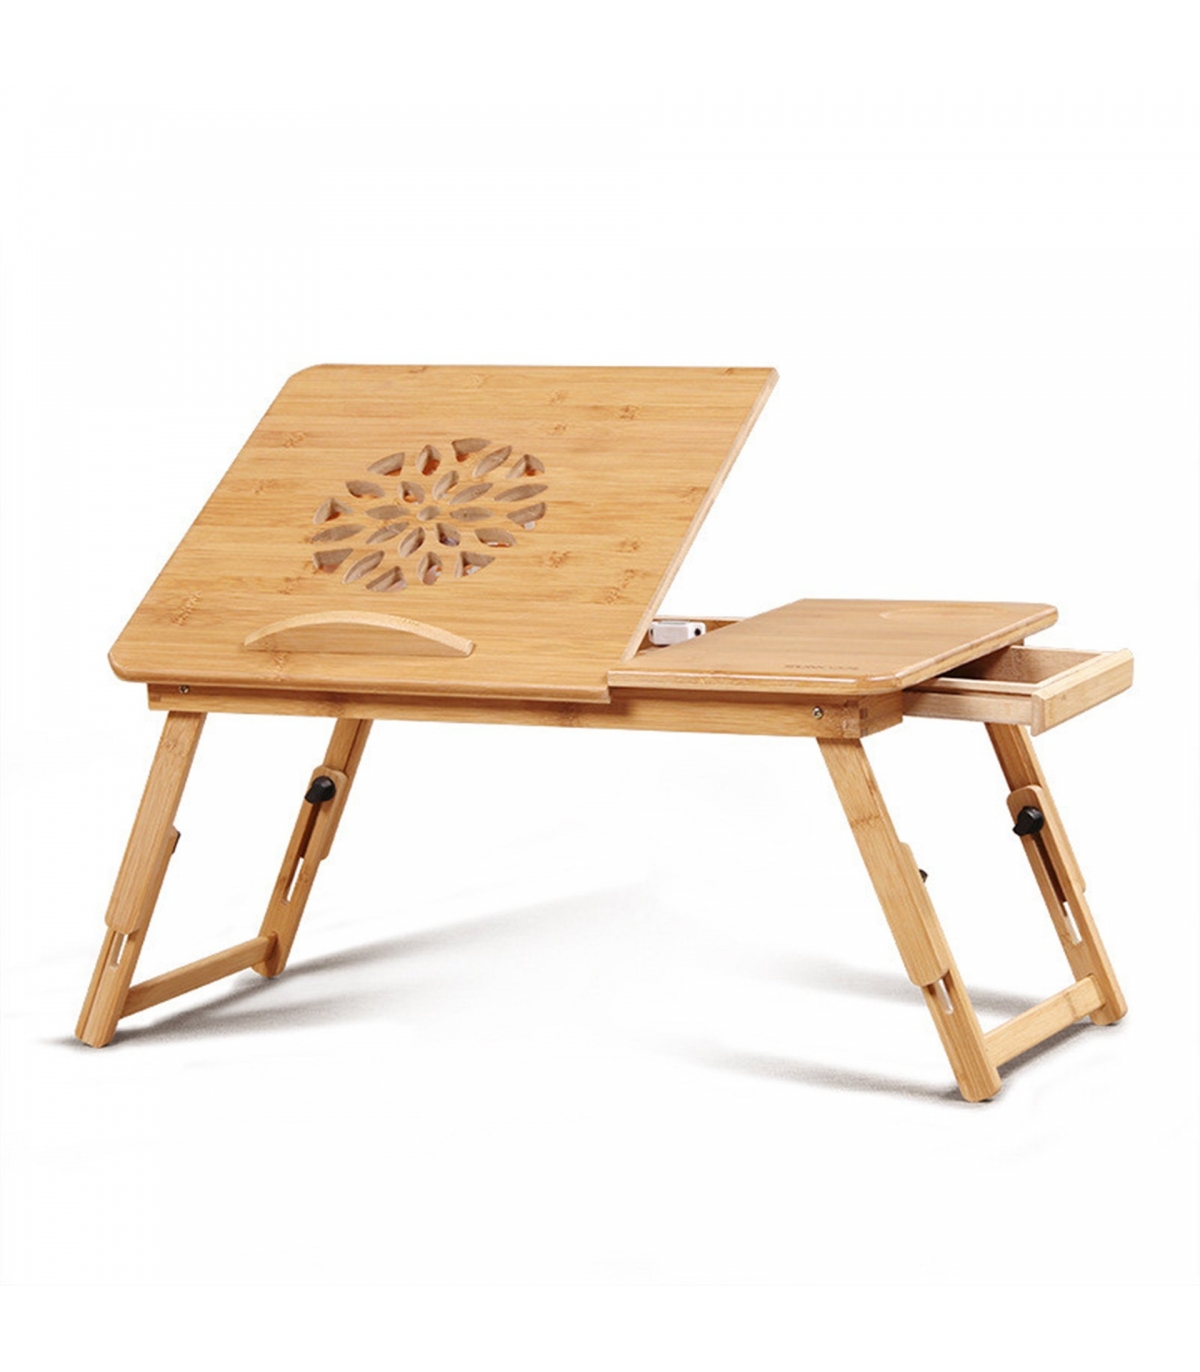 میز-چوبی-از-جنس-بامبو-لپ-تاپ-55-سانتی-متری-همراه-با-فن-مدل-b-94(2).jpg